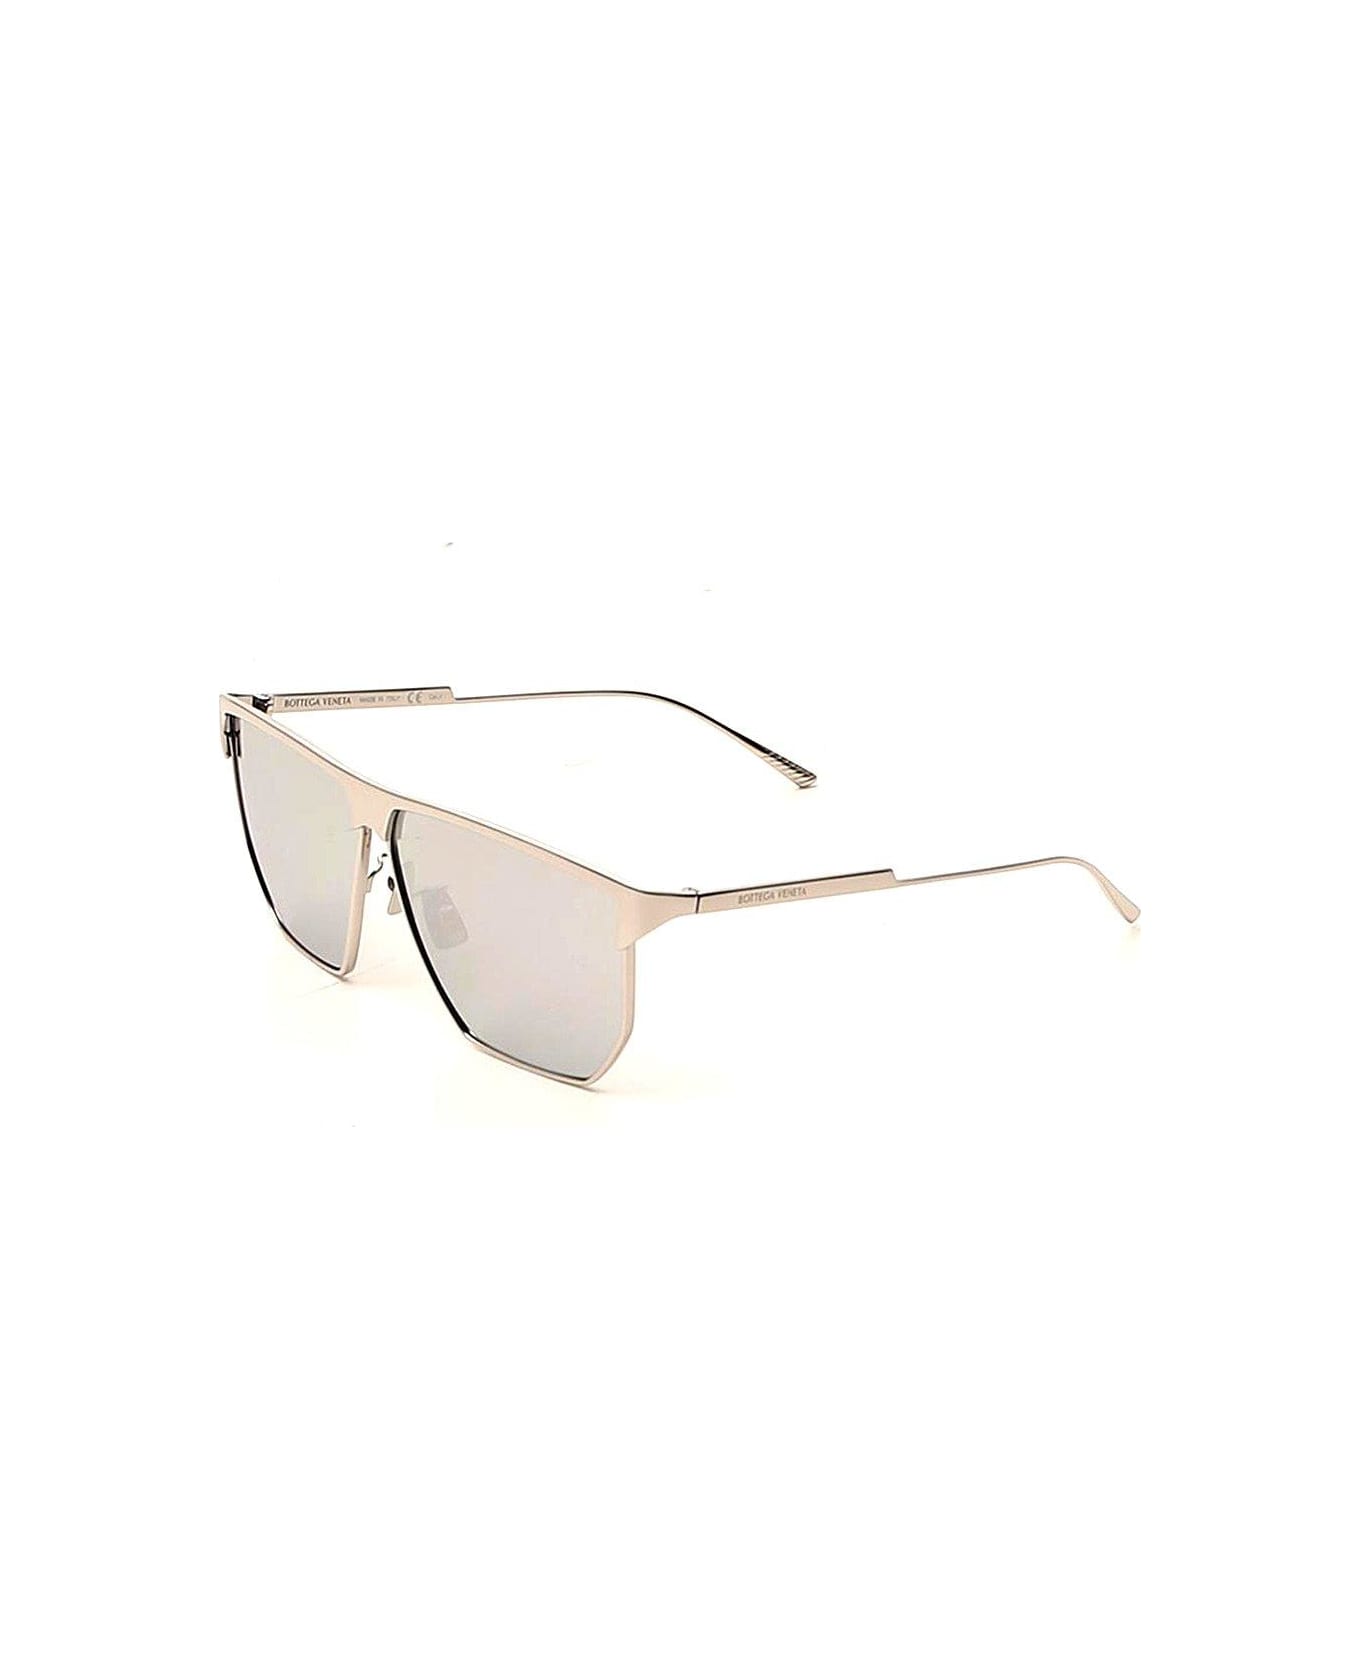 Bottega Veneta Angular Aviator Sunglasses - SILVER